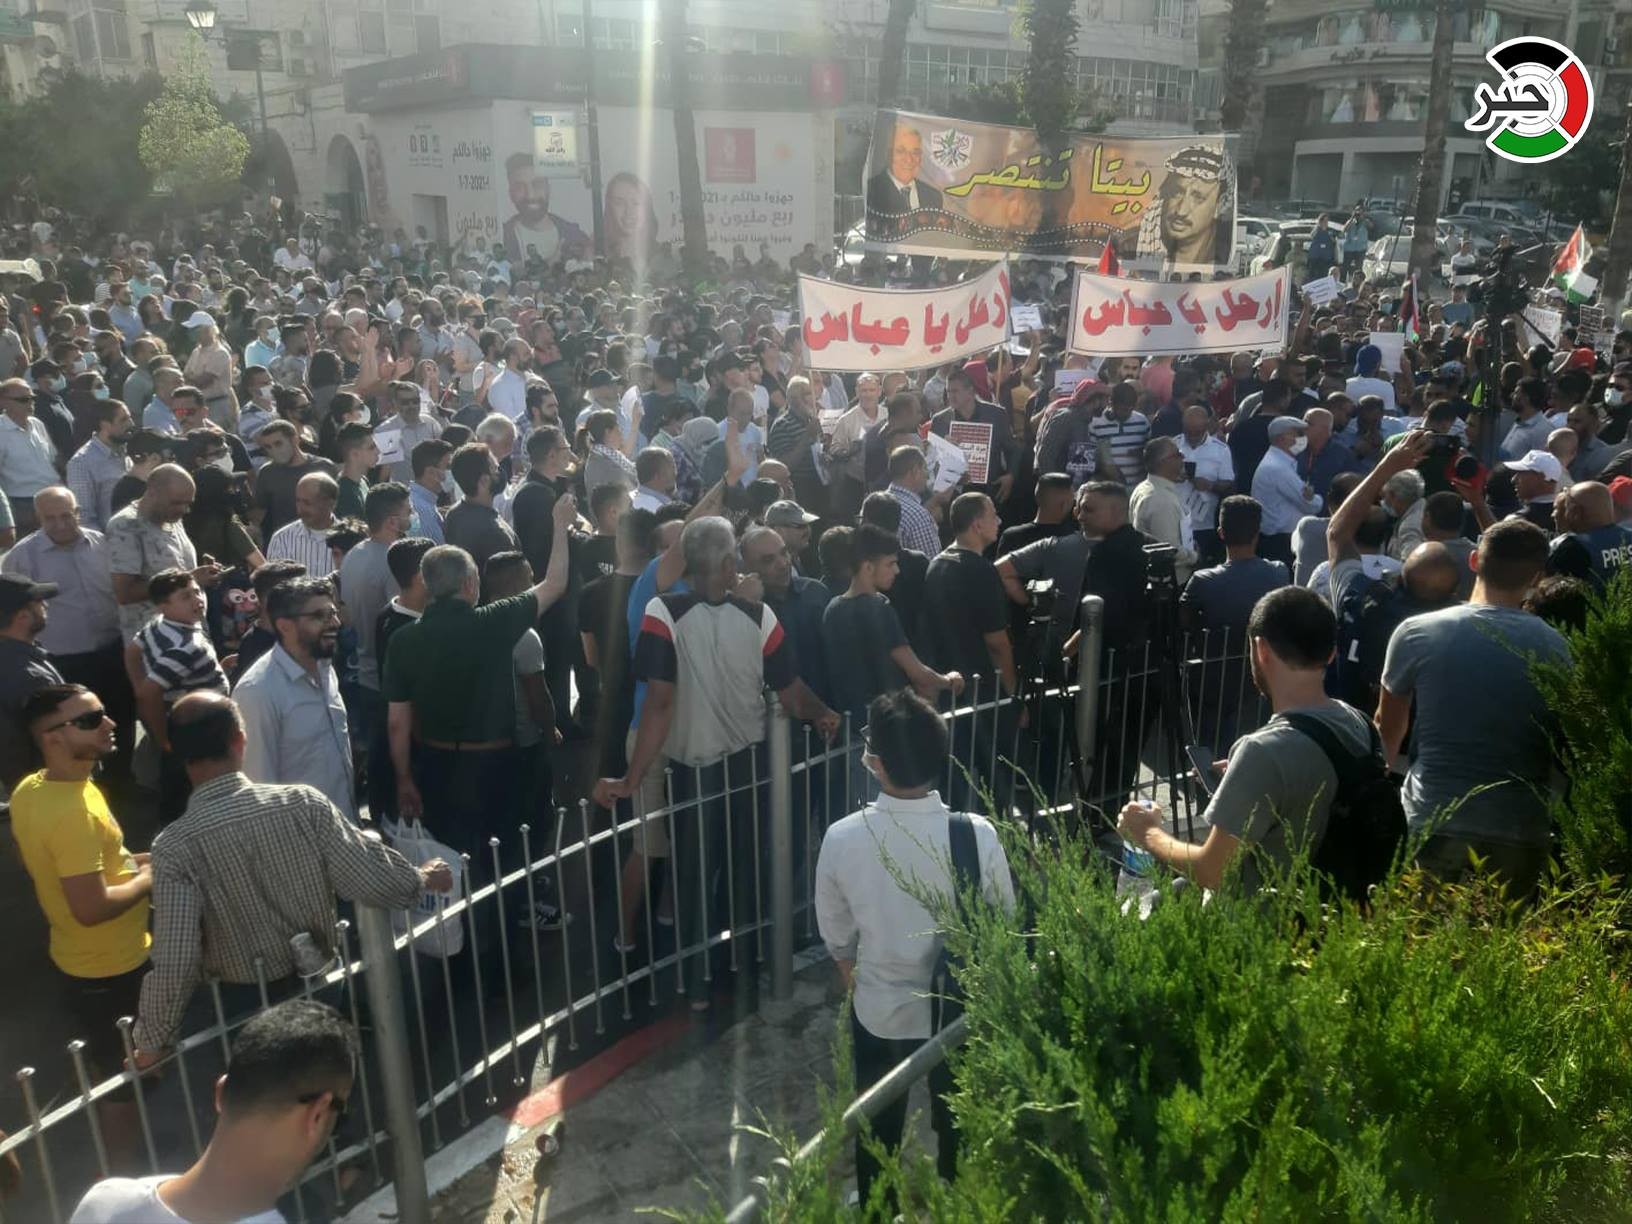 بالفيديو والصور: مسيرة في رام الله للتنديد باغتيال الناشط السياسي نزار بنات